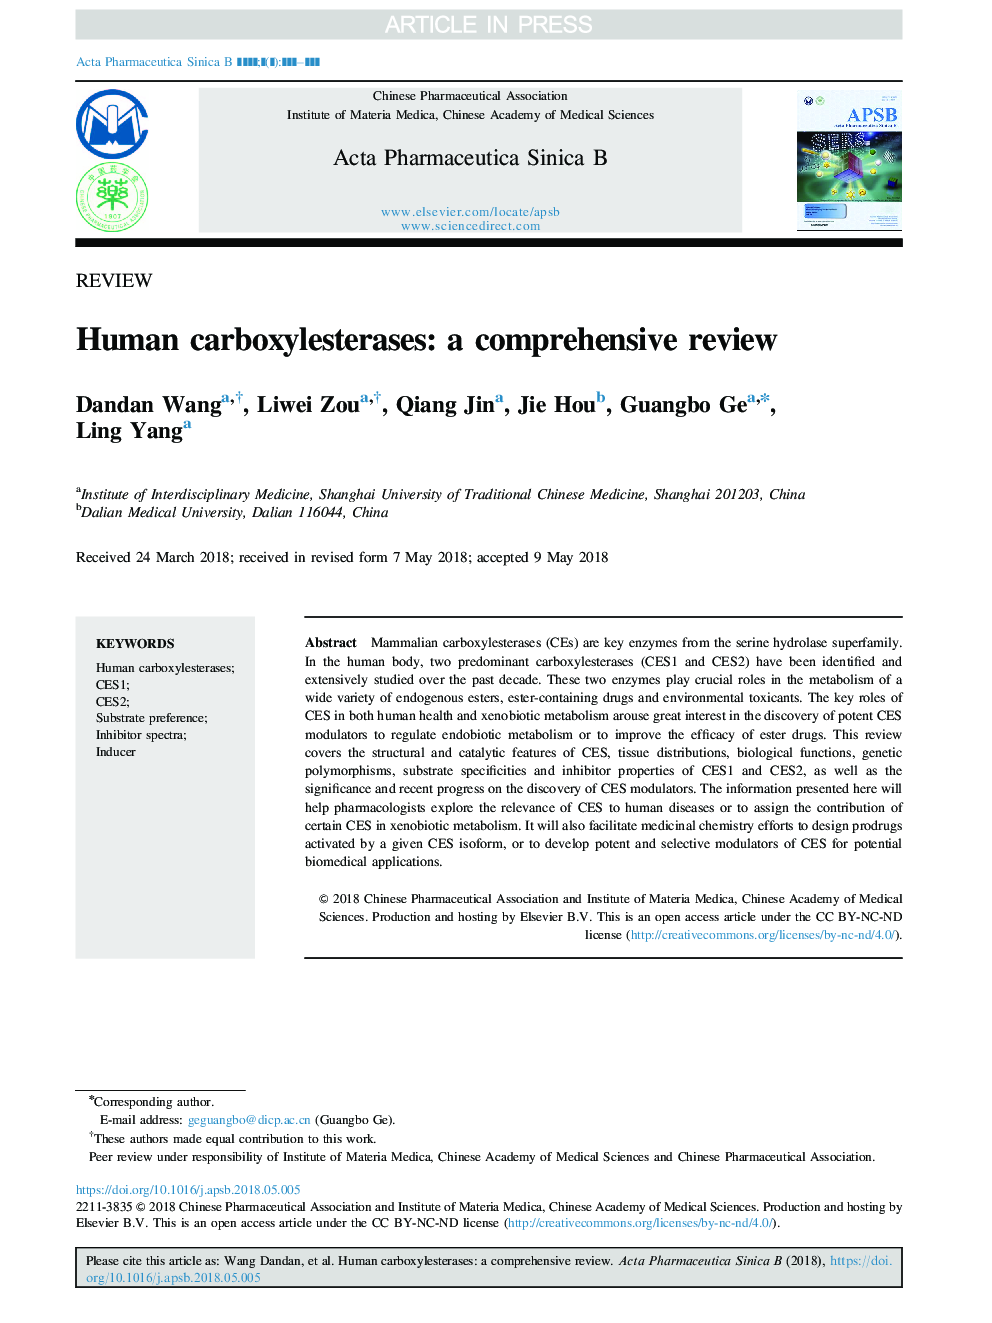 کاربوکسیستریازهای انسانی: یک بررسی جامع